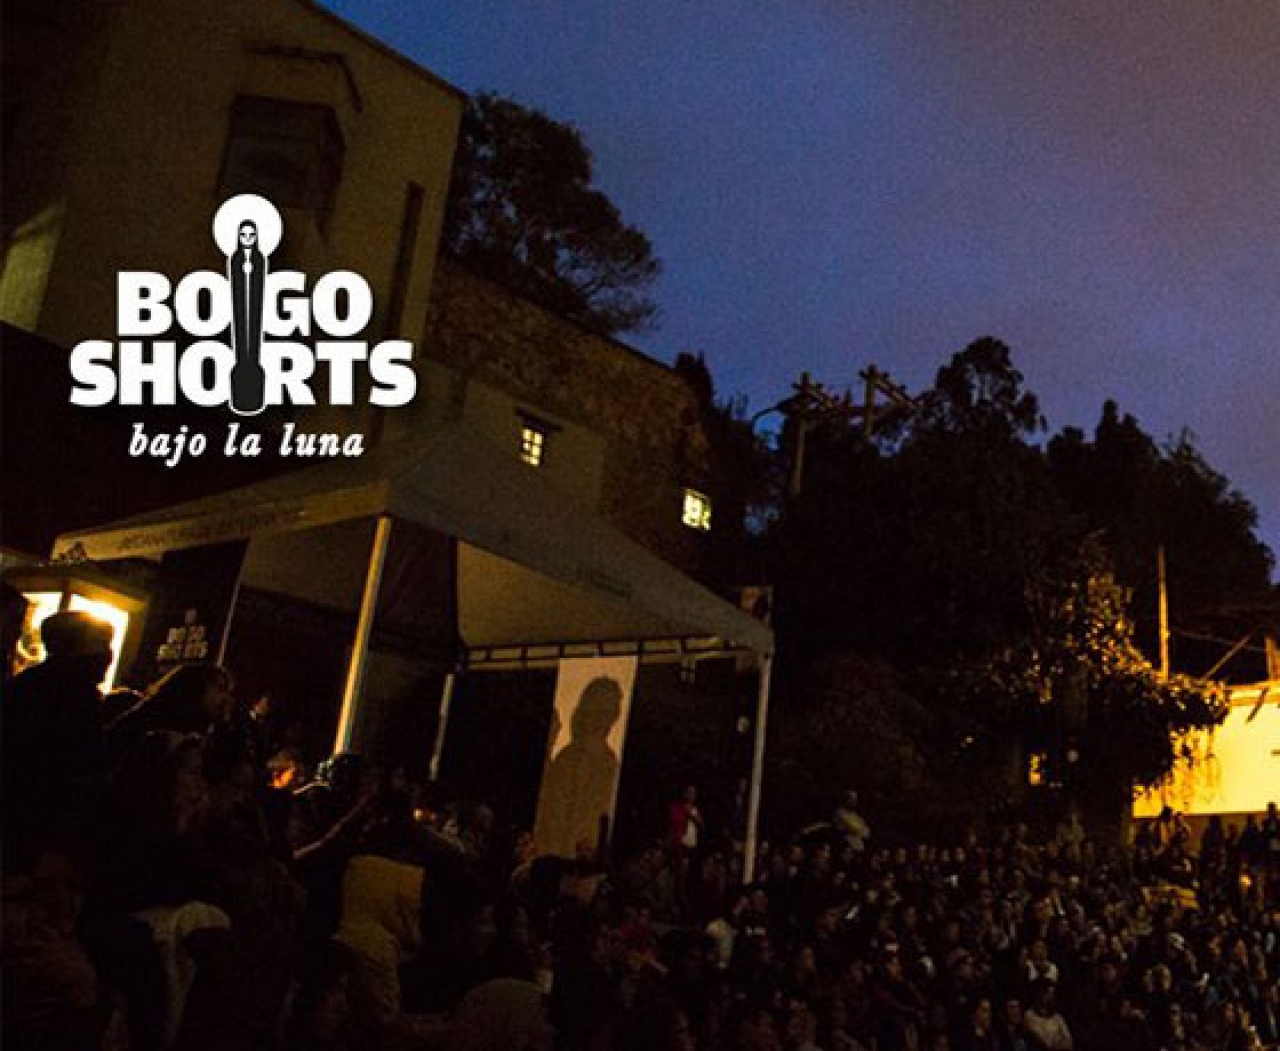 El festival de cortos de Bogotá: Una alternativa cinematográfica